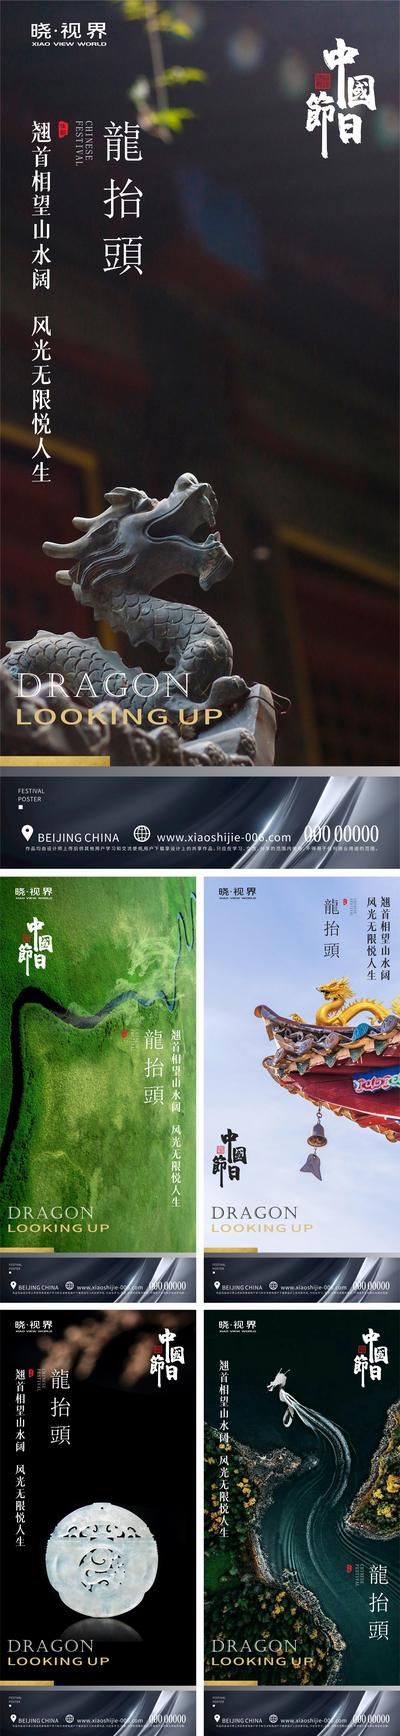 南门网 海报 中国传统节日 二月初二 龙抬头 中式 龙 雕塑 玉佩